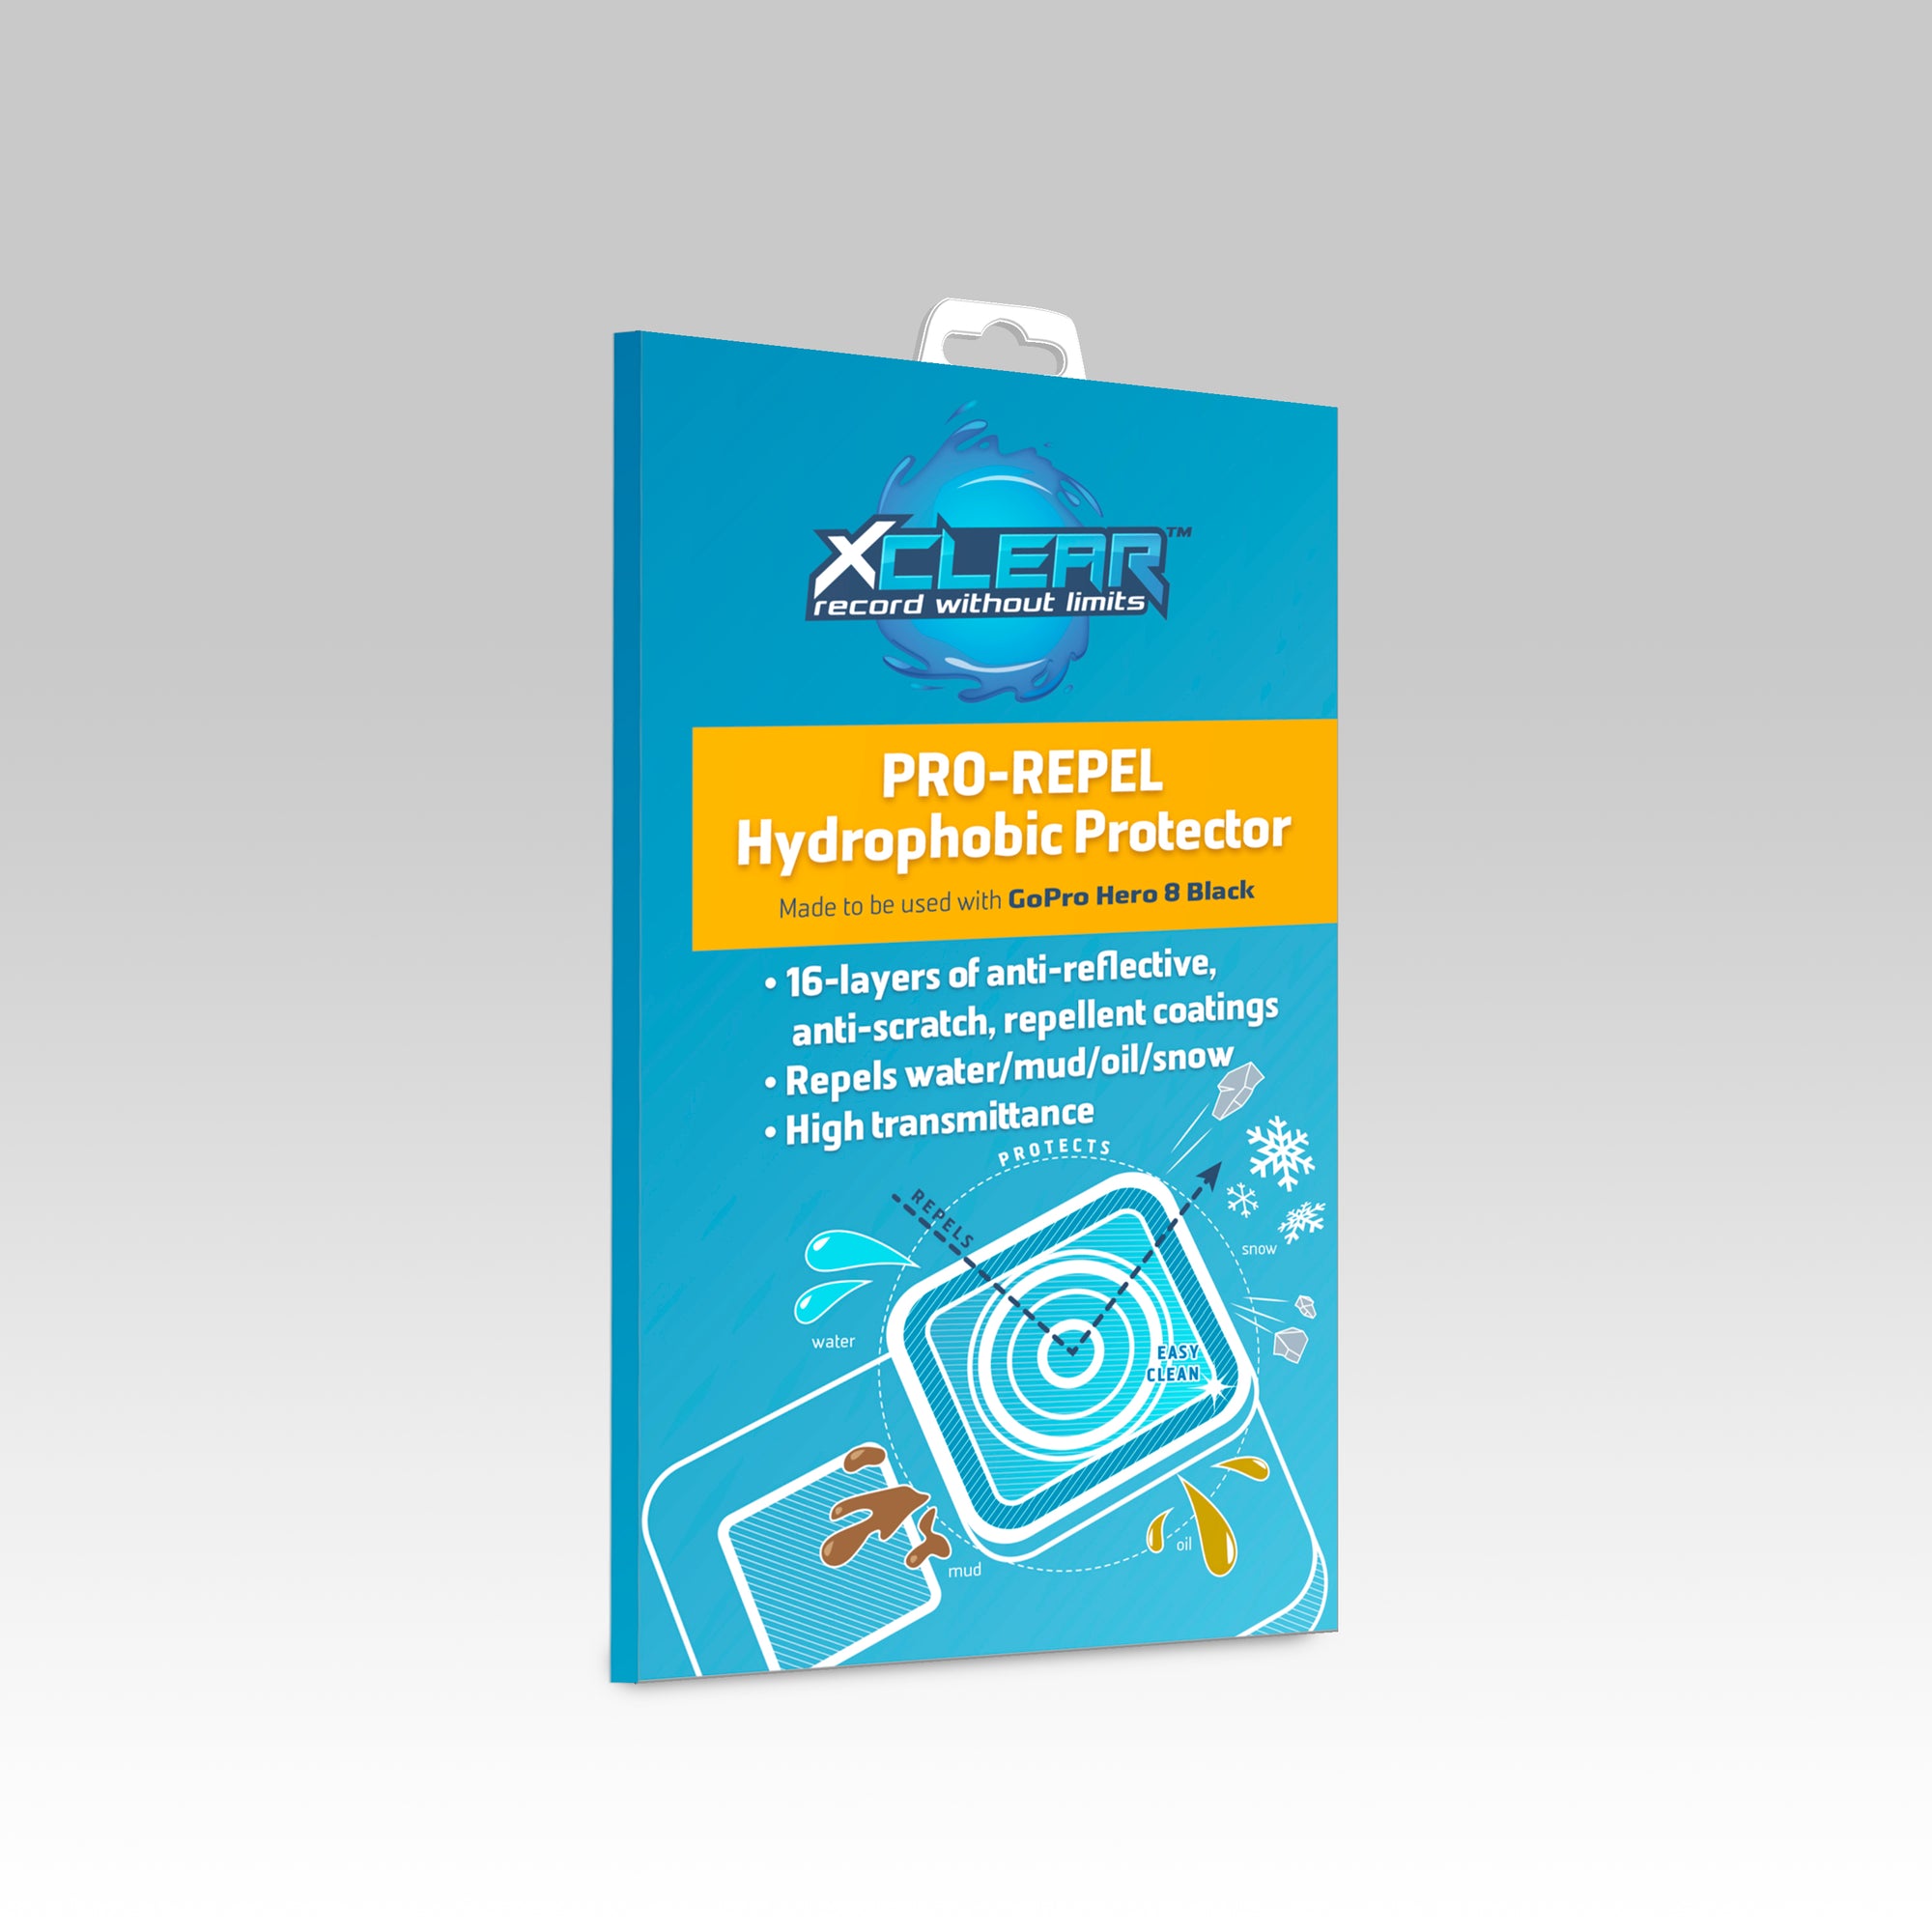 upscreen Scratch Shield Clear Premium Protection d'écran pour GoPro Hero 8  Black (Lentille)